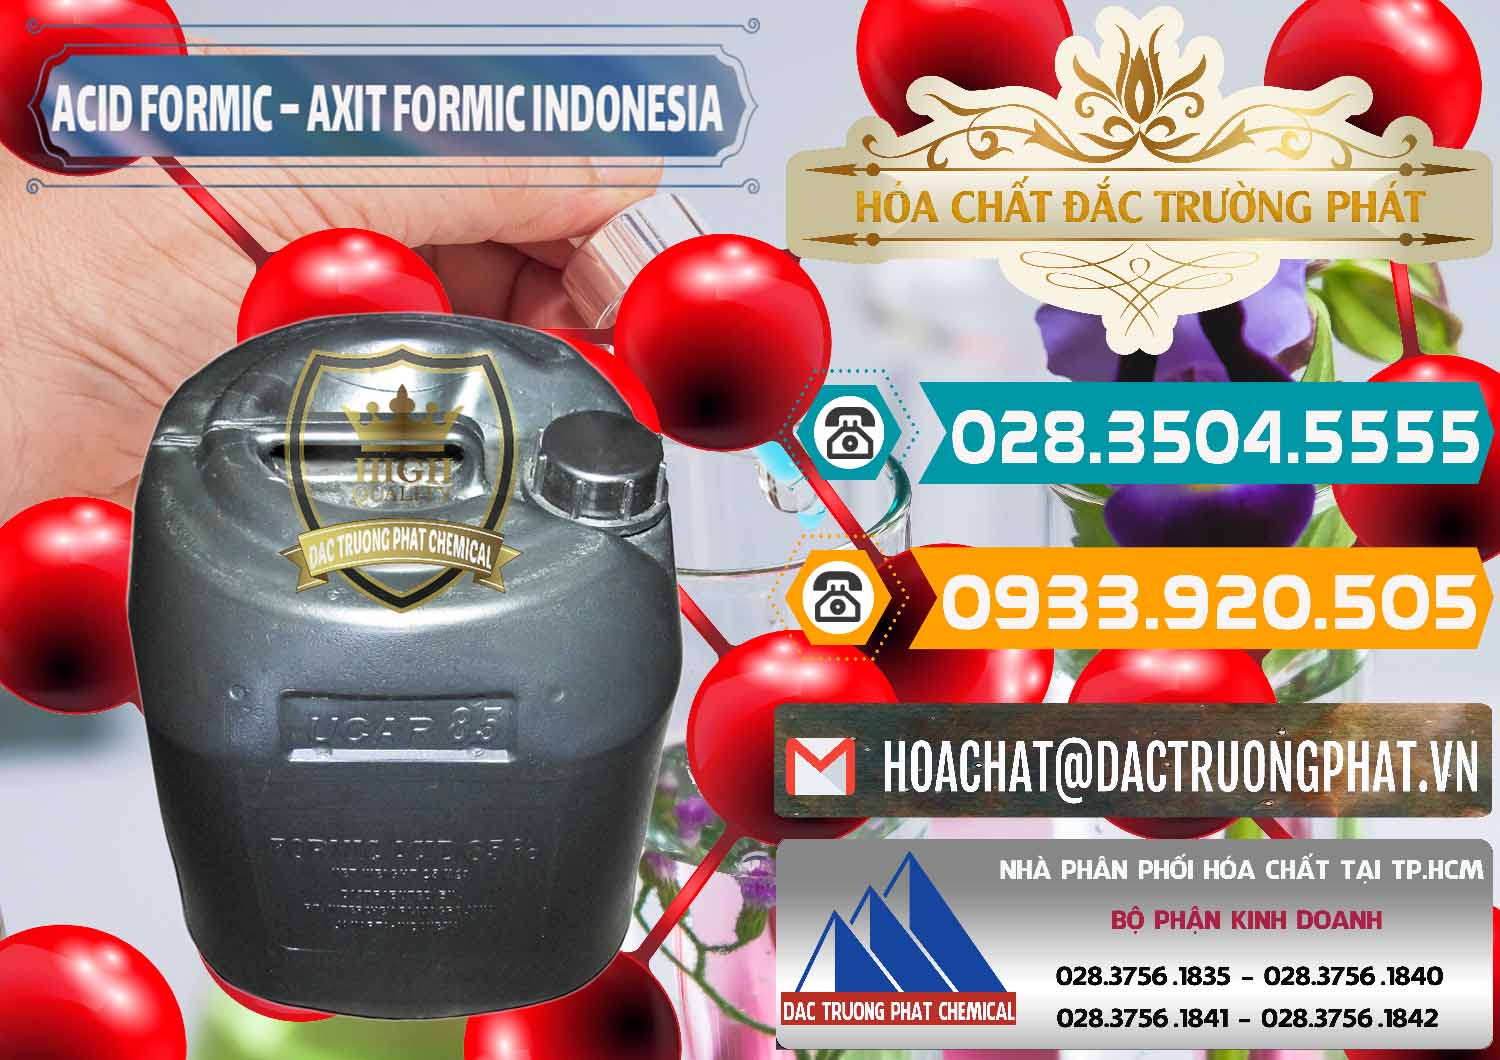 Cty chuyên kinh doanh & bán Acid Formic - Axit Formic Indonesia - 0026 - Đơn vị phân phối & cung cấp hóa chất tại TP.HCM - congtyhoachat.vn